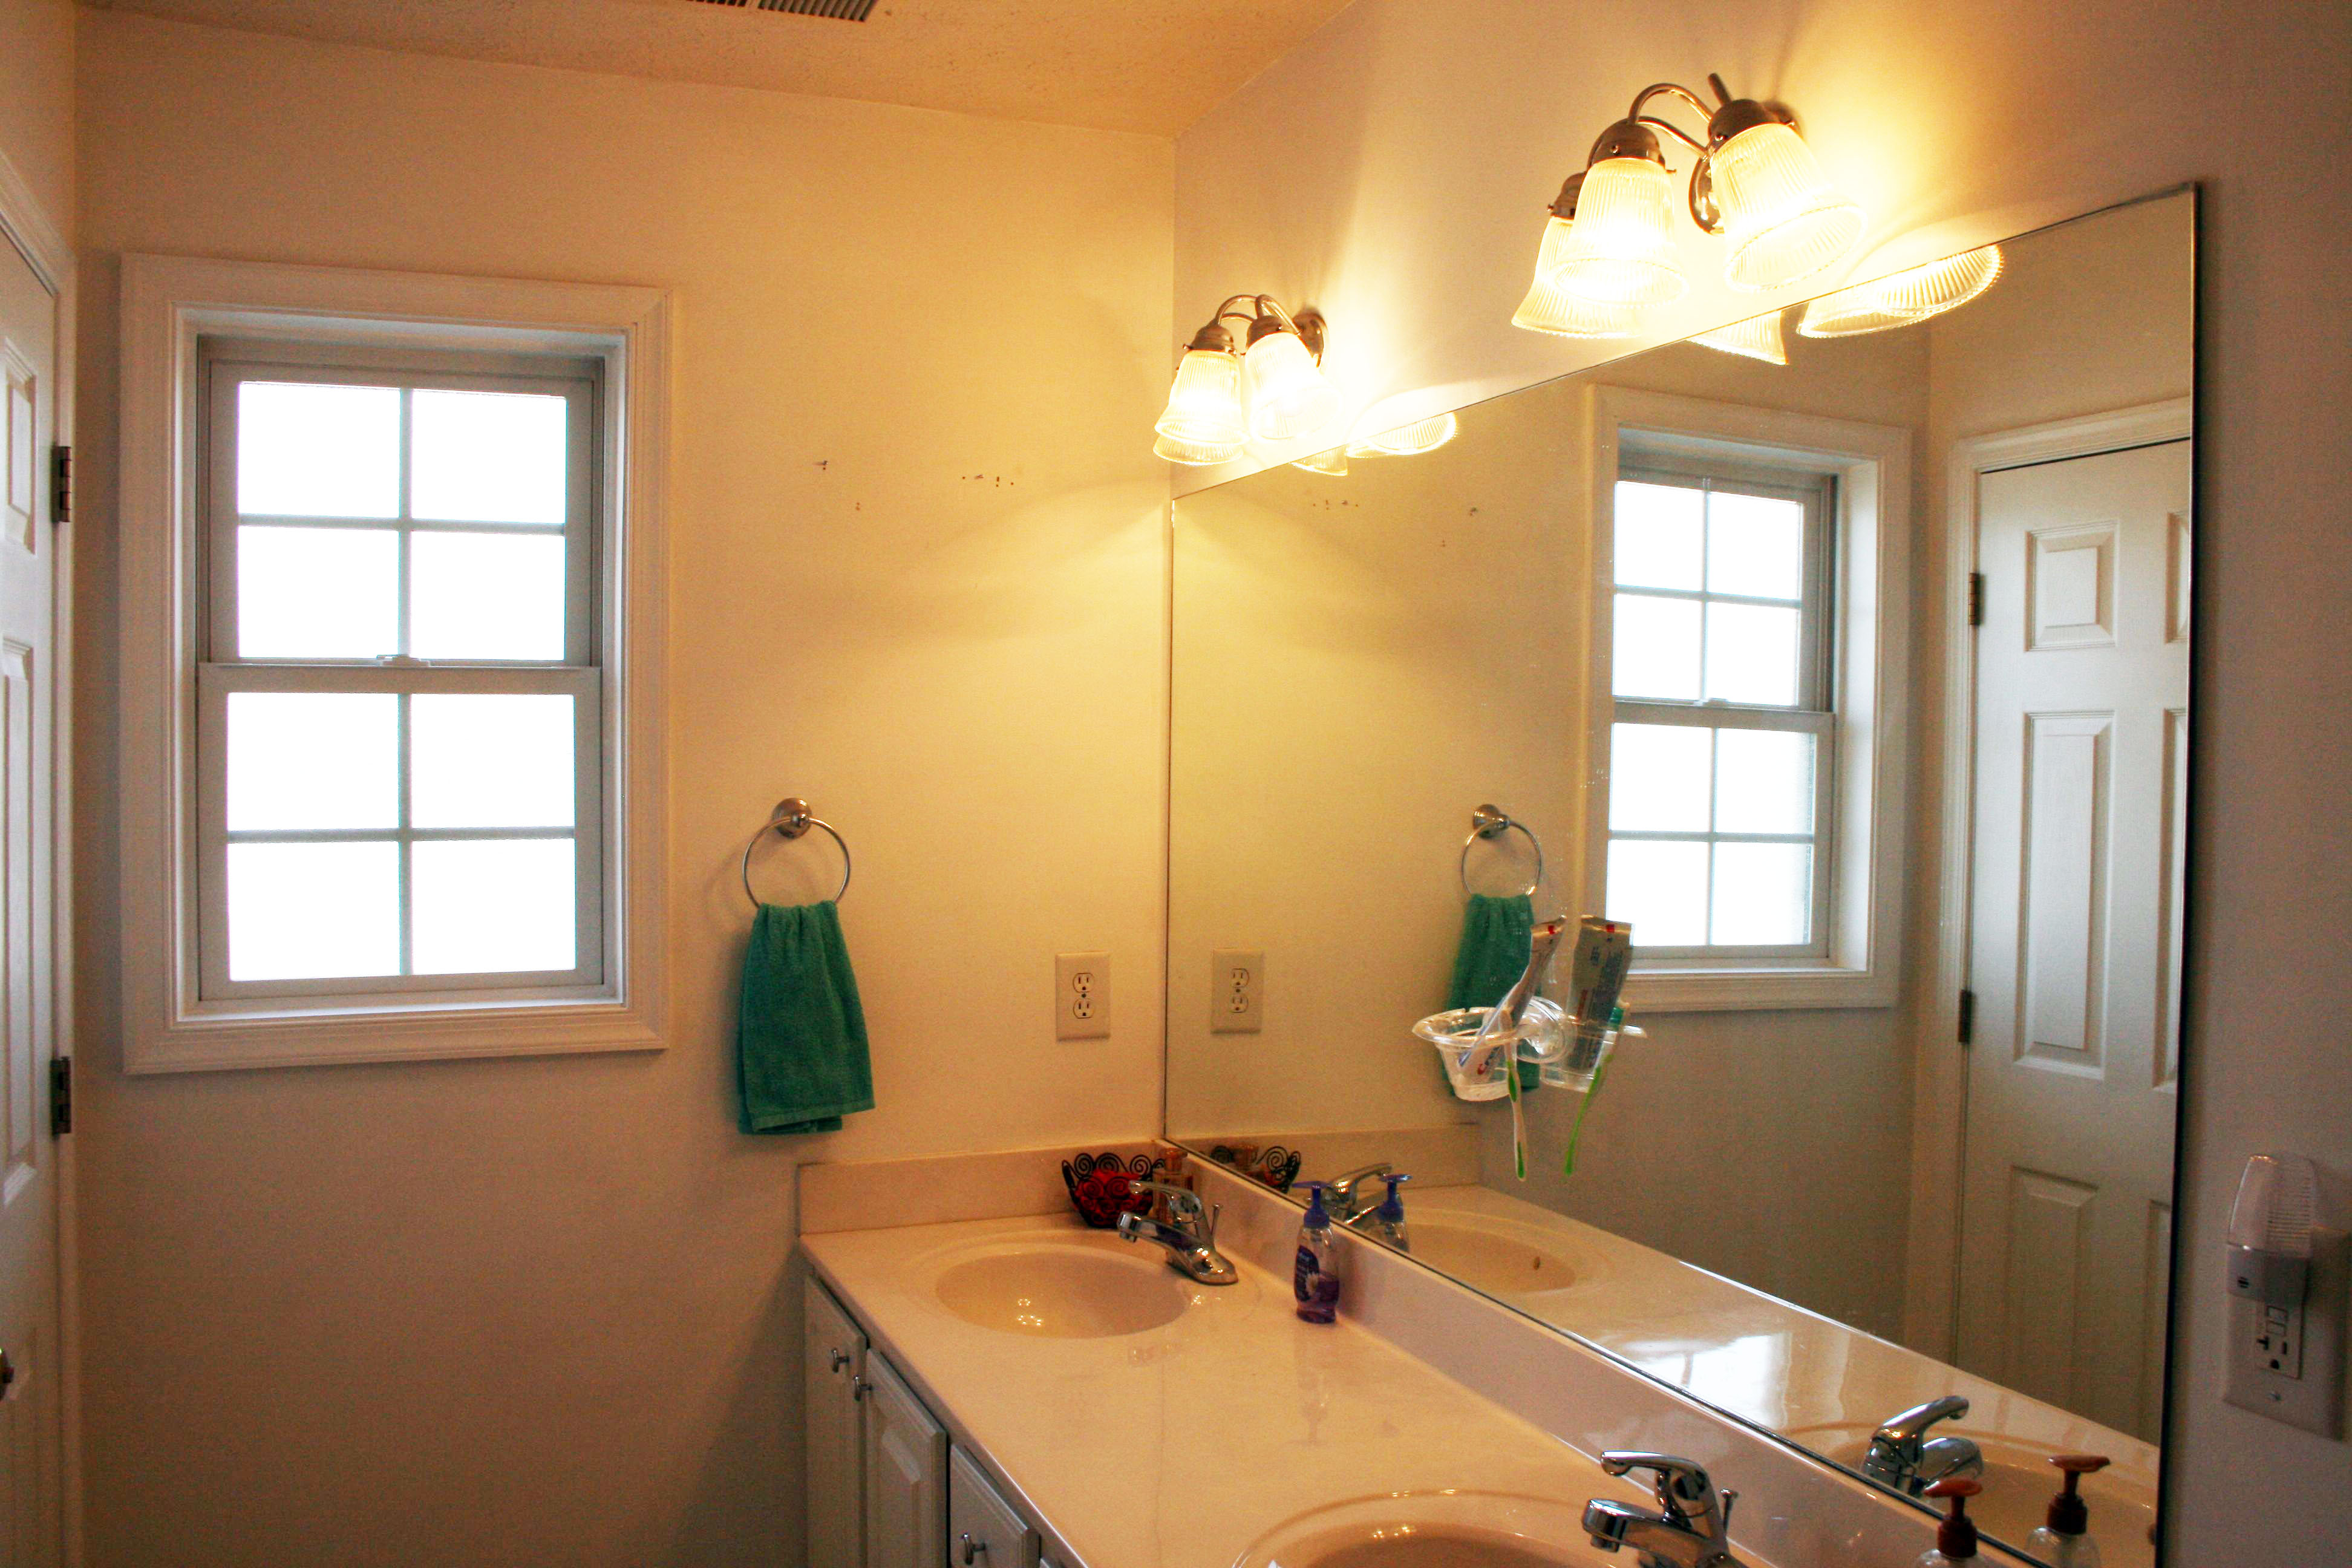 Updating The Bathroom Light Fixture, How To Replace Vanity Light Fixture